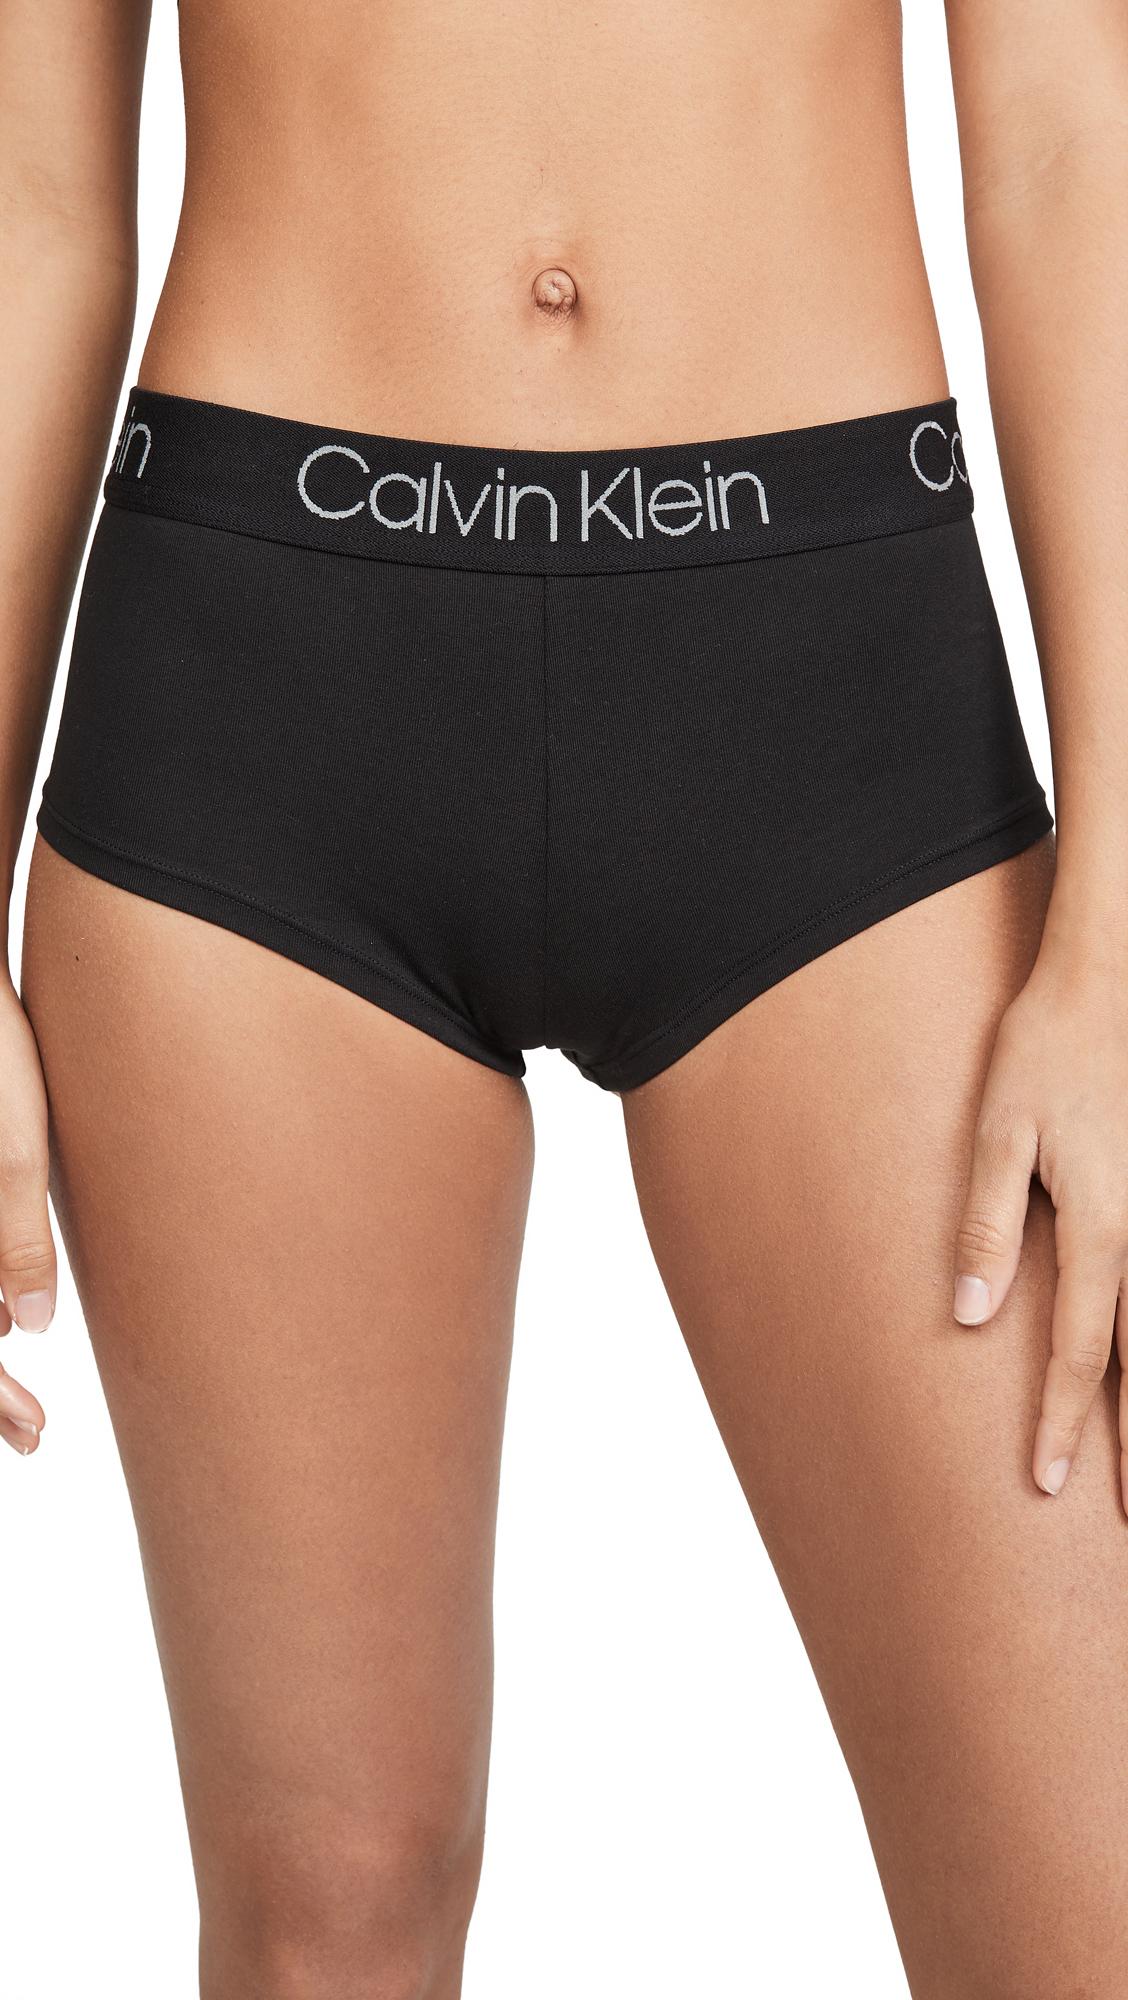 Calvin Klein Underwear Boy Shorts Clearance - www.puzzlewood.net 1696699092